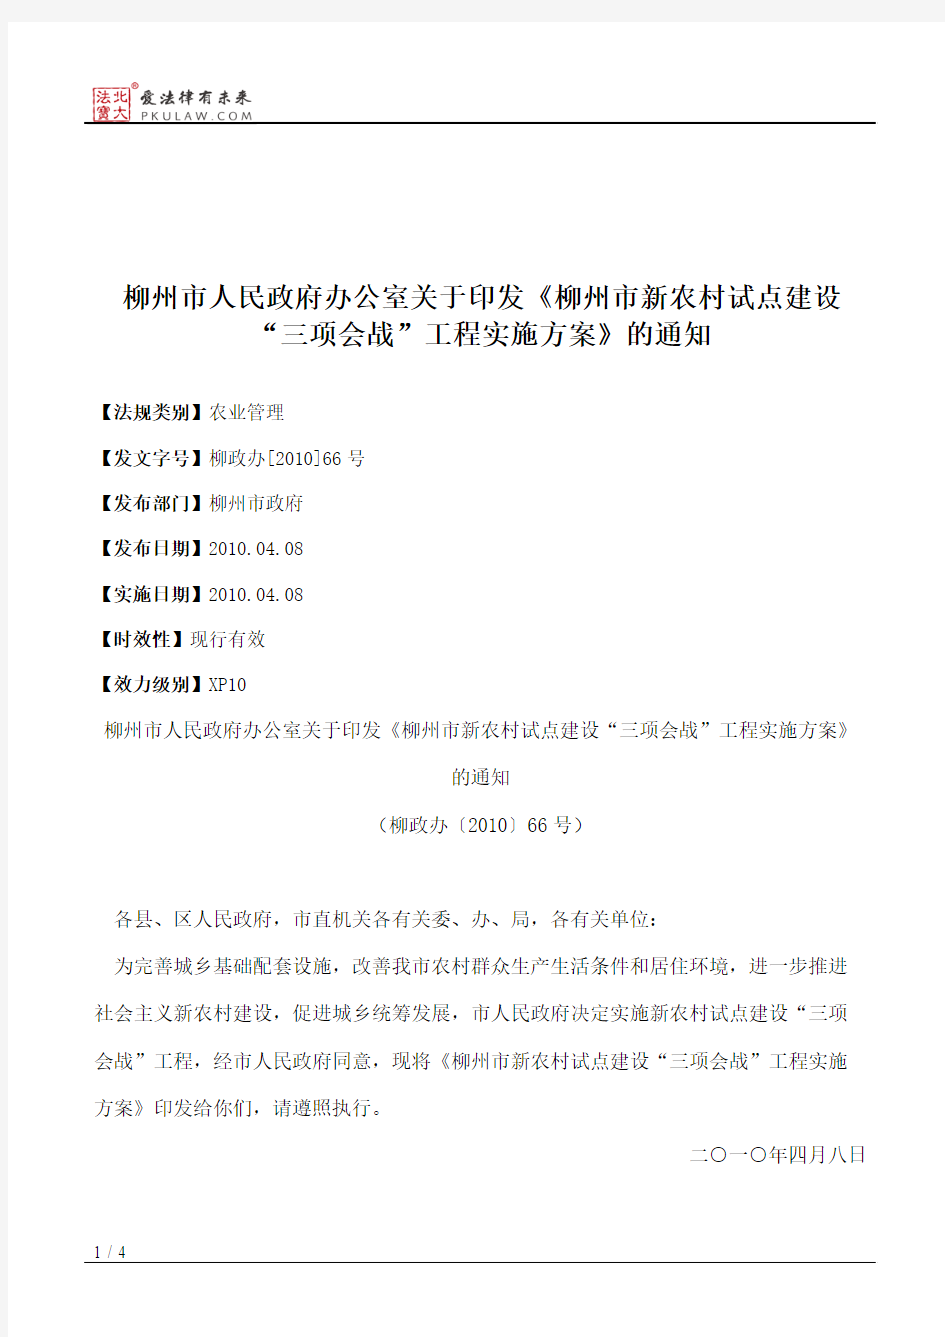 柳州市人民政府办公室关于印发《柳州市新农村试点建设“三项会战